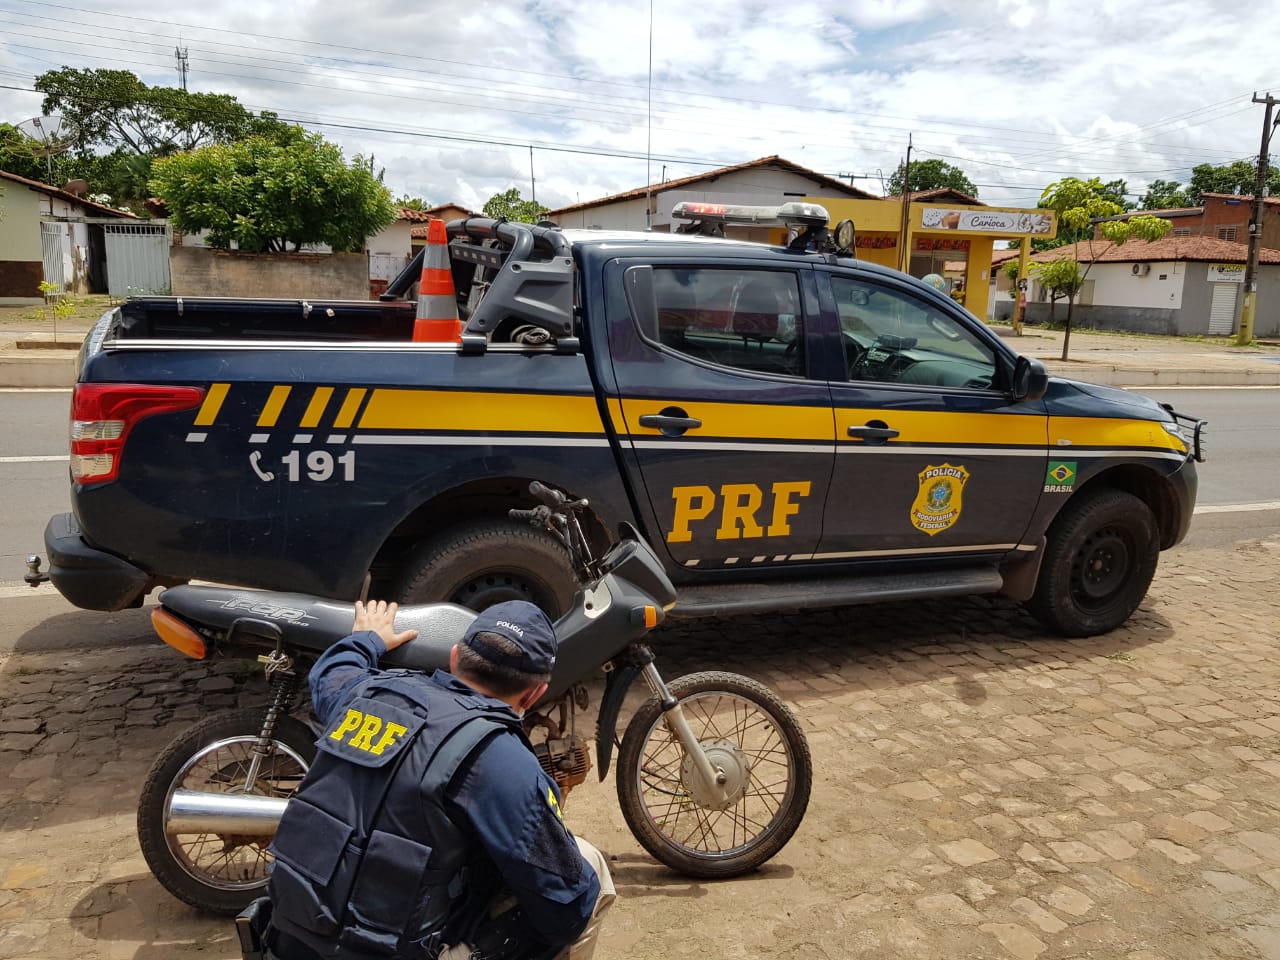 Seis motos roubadas são recuperadas em 24h nas rodovias federais do Piauí